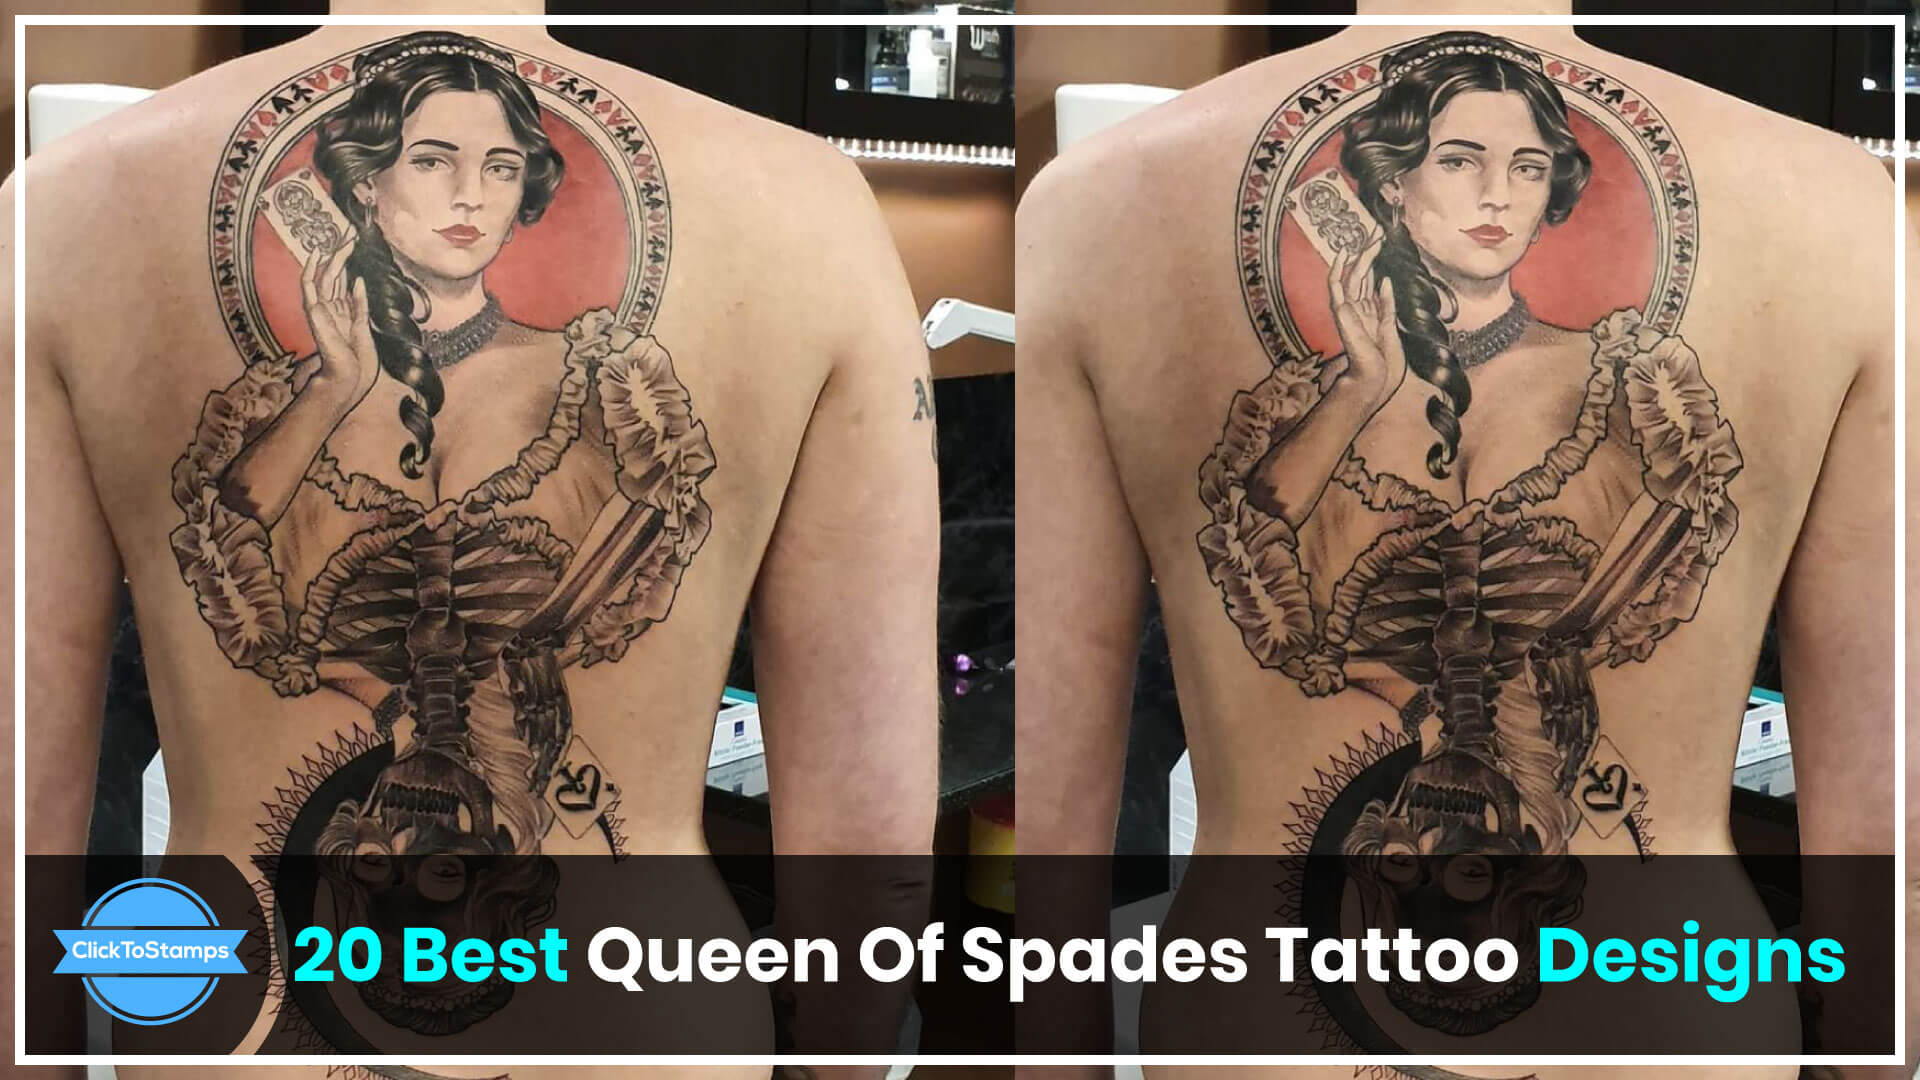 Queen of Spades tattoo